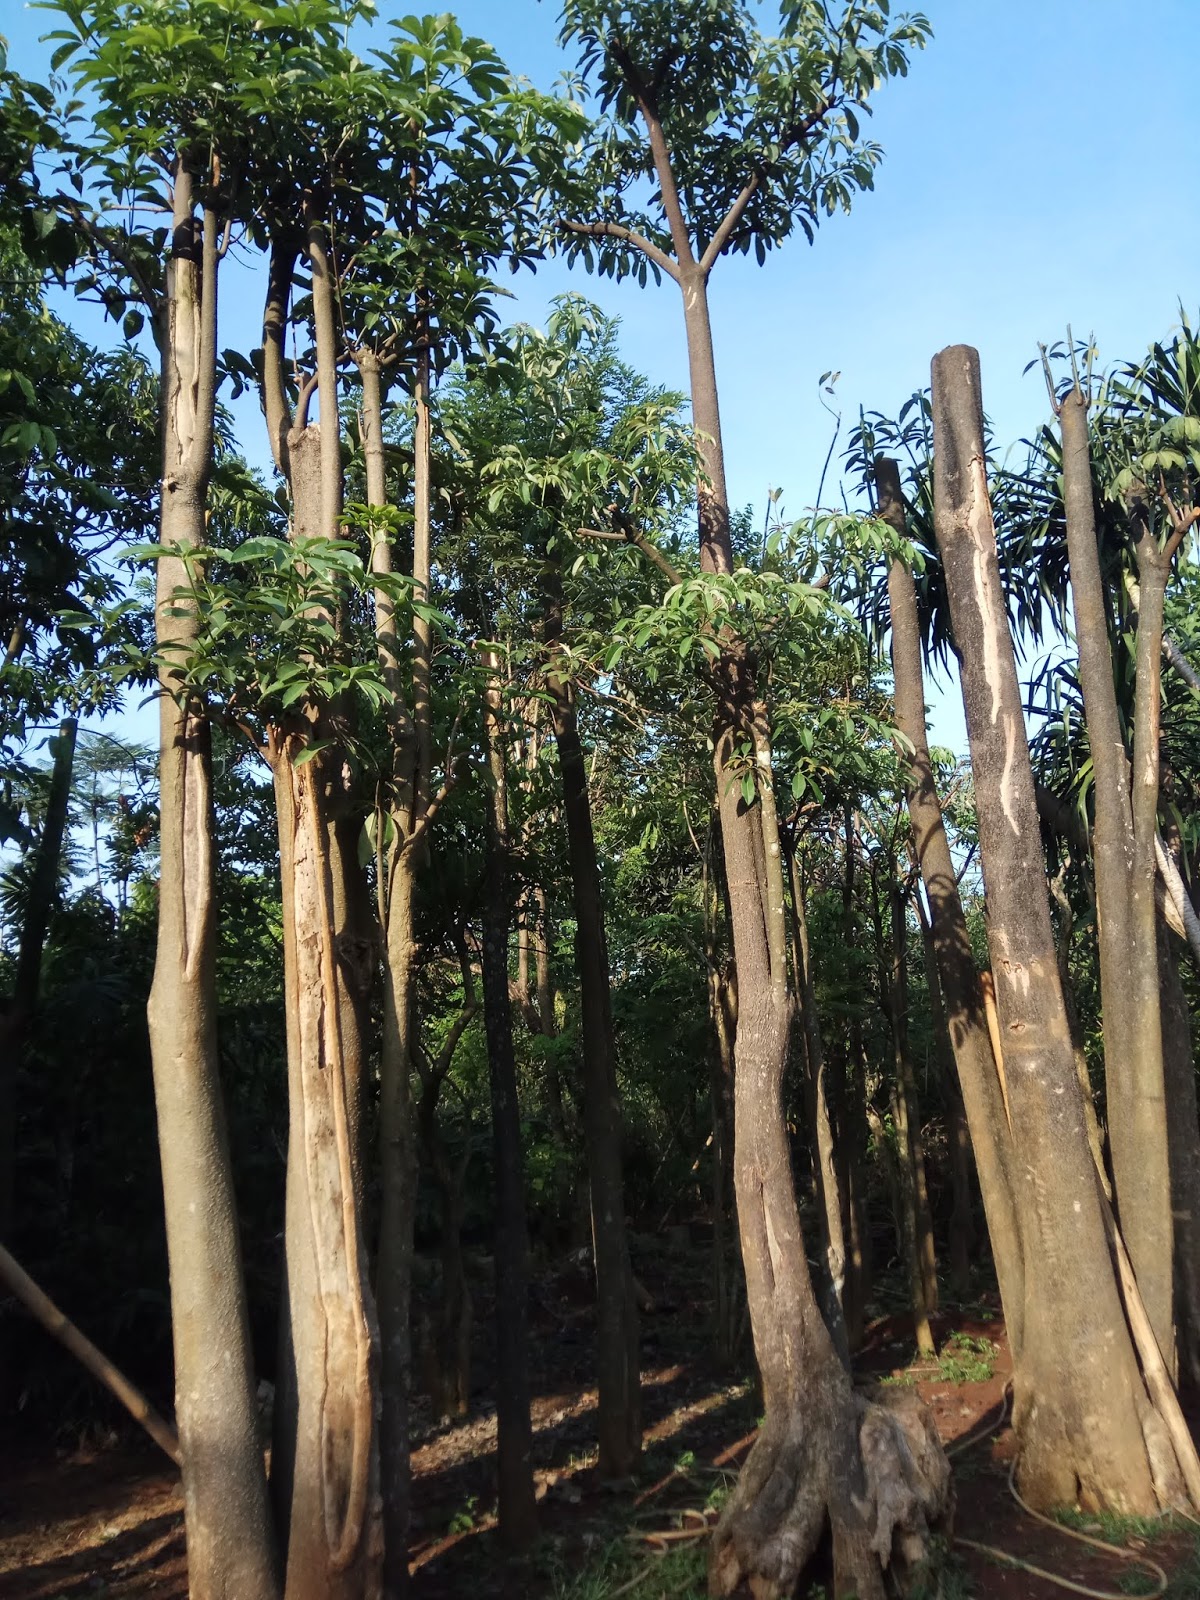 Daftar Harga Pohon Pule  untuk Taman di Surabaya Garden Style